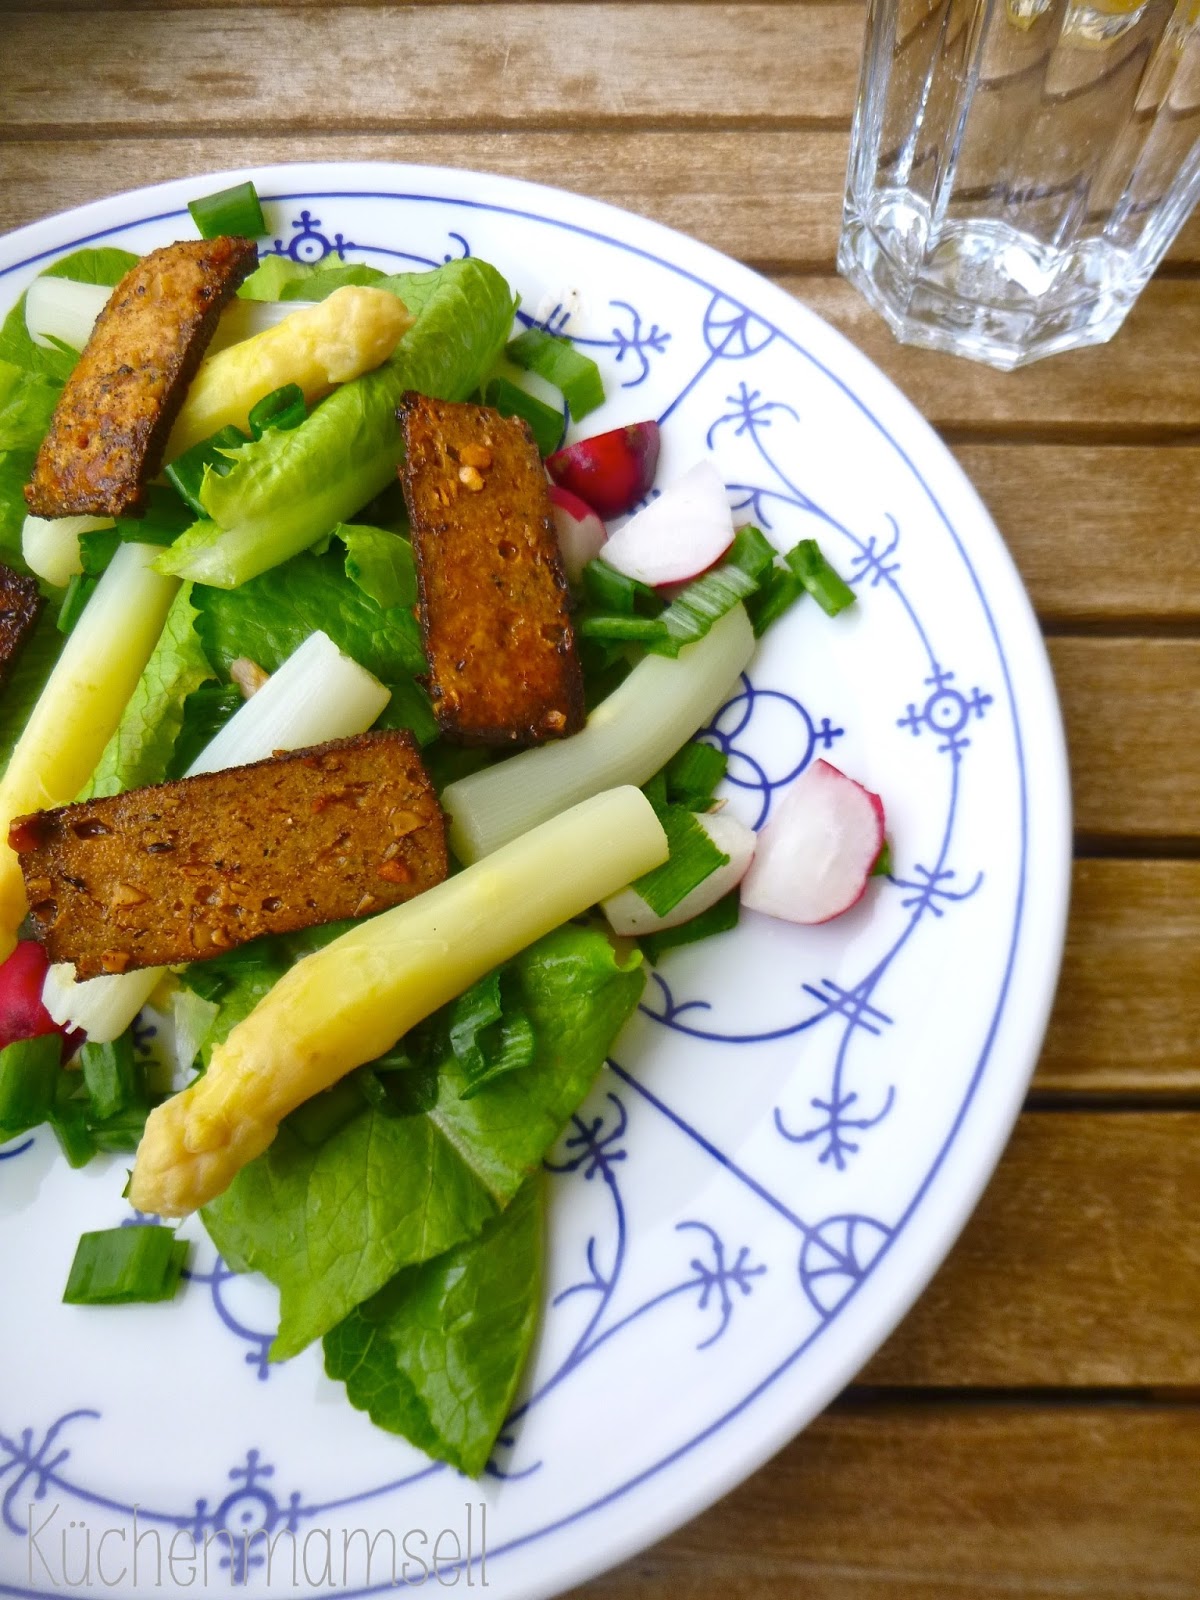 Küchenmamsell: Spargelsalat mit gebratenem Tofu